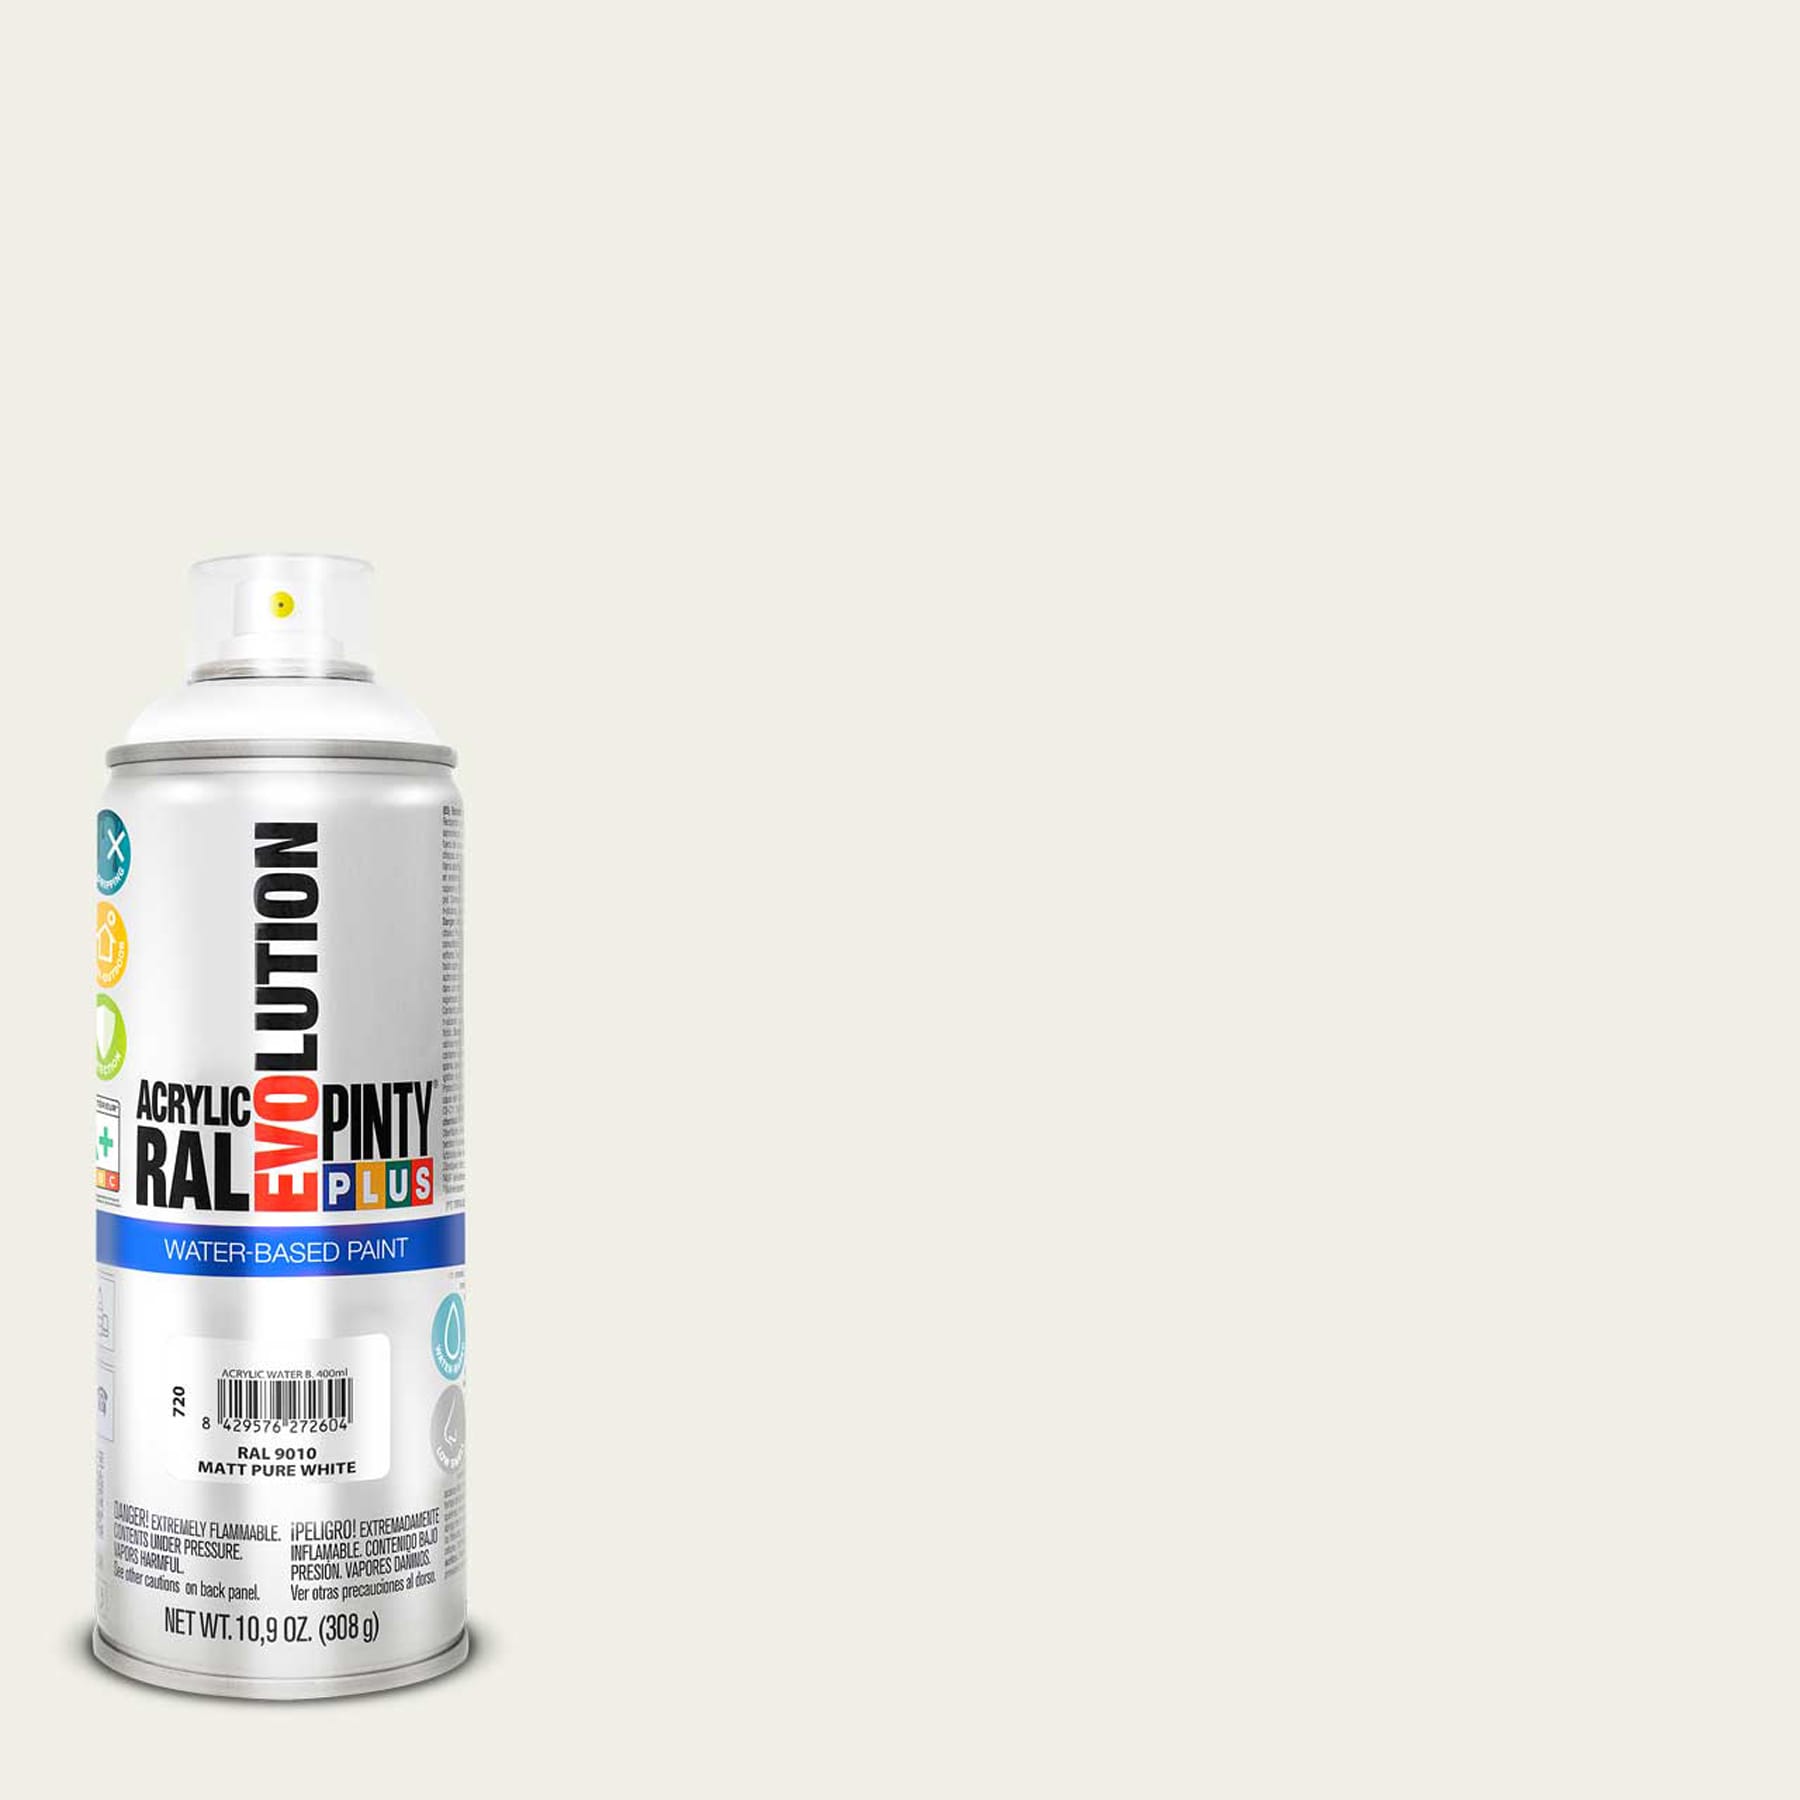 Pintyplus Spray Barniz Brillante Art&Craft 400ml